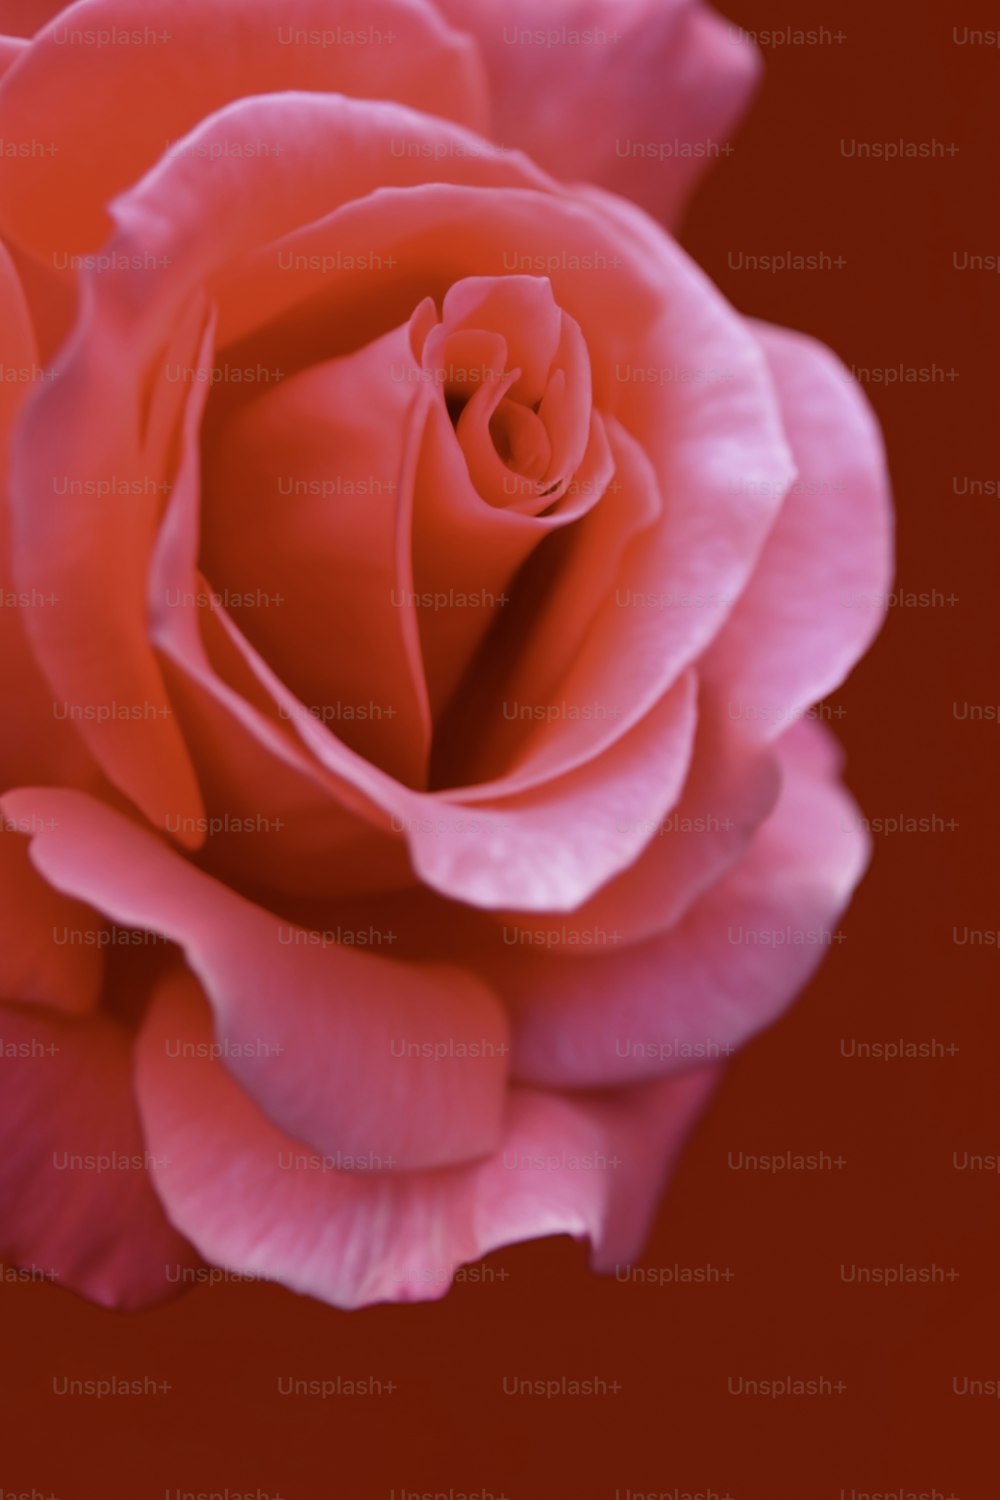 Un primer plano de una rosa rosa sobre un fondo rojo